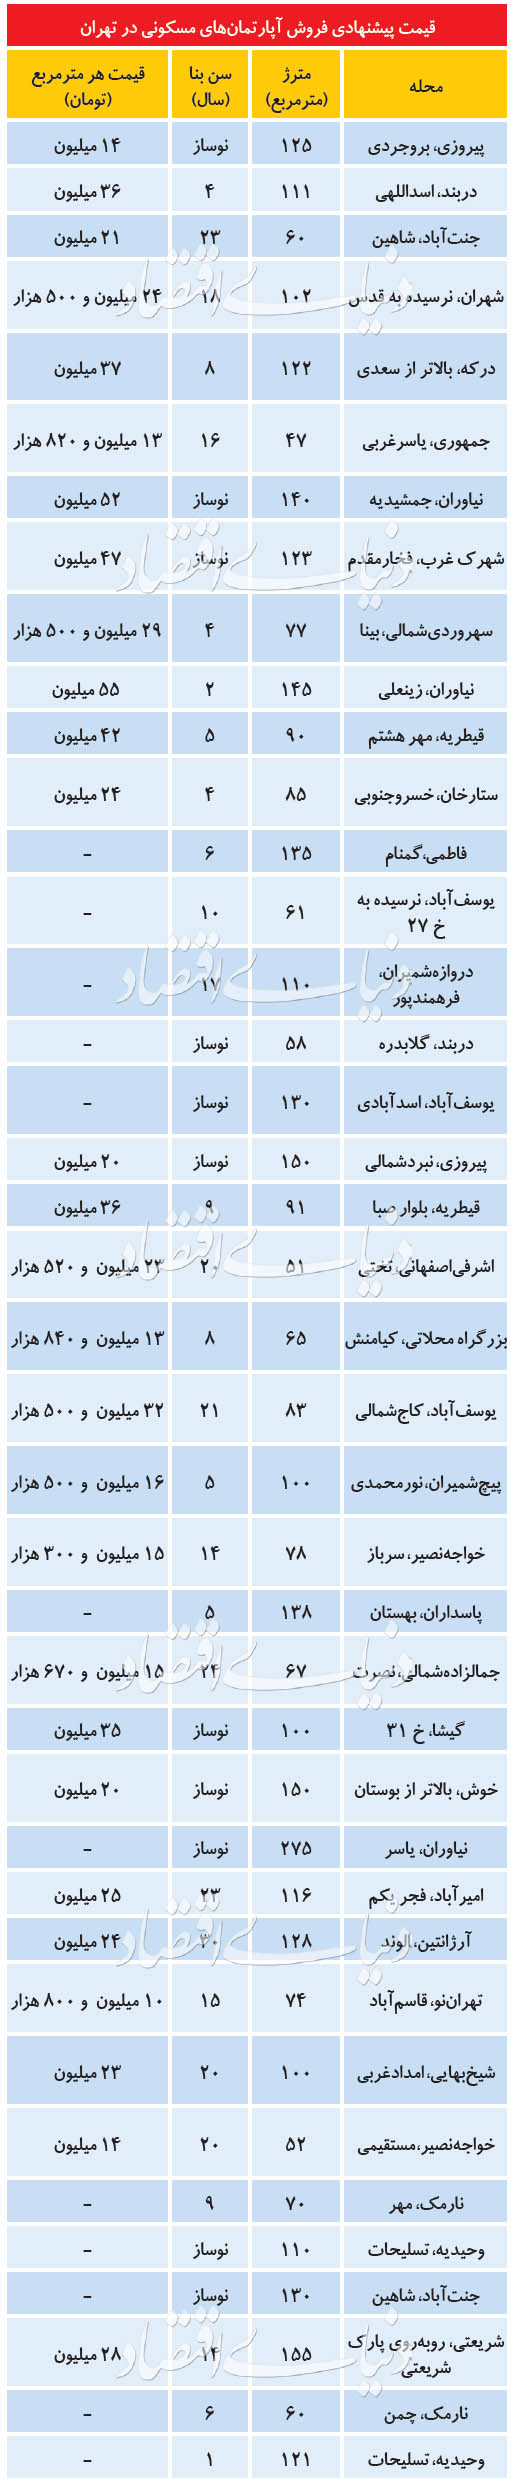 قیمت پیشنهادی فروش آپارتمان در تهران+ جدول